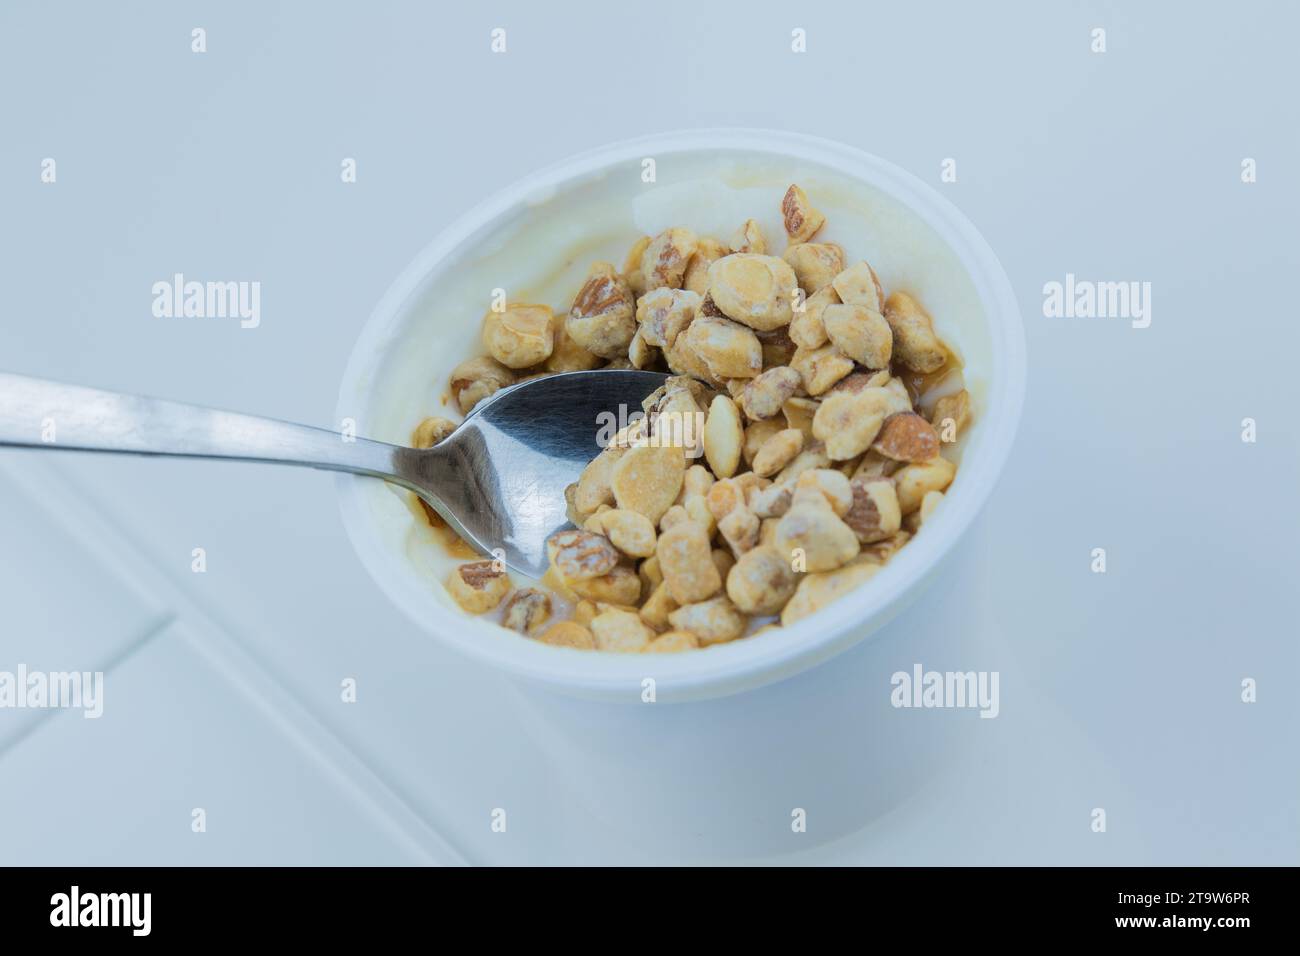 primo piano di cereali sani e cioccolato e yogurt bianco sul cucchiaio, concetto di nutrizione alimentare sana Foto Stock